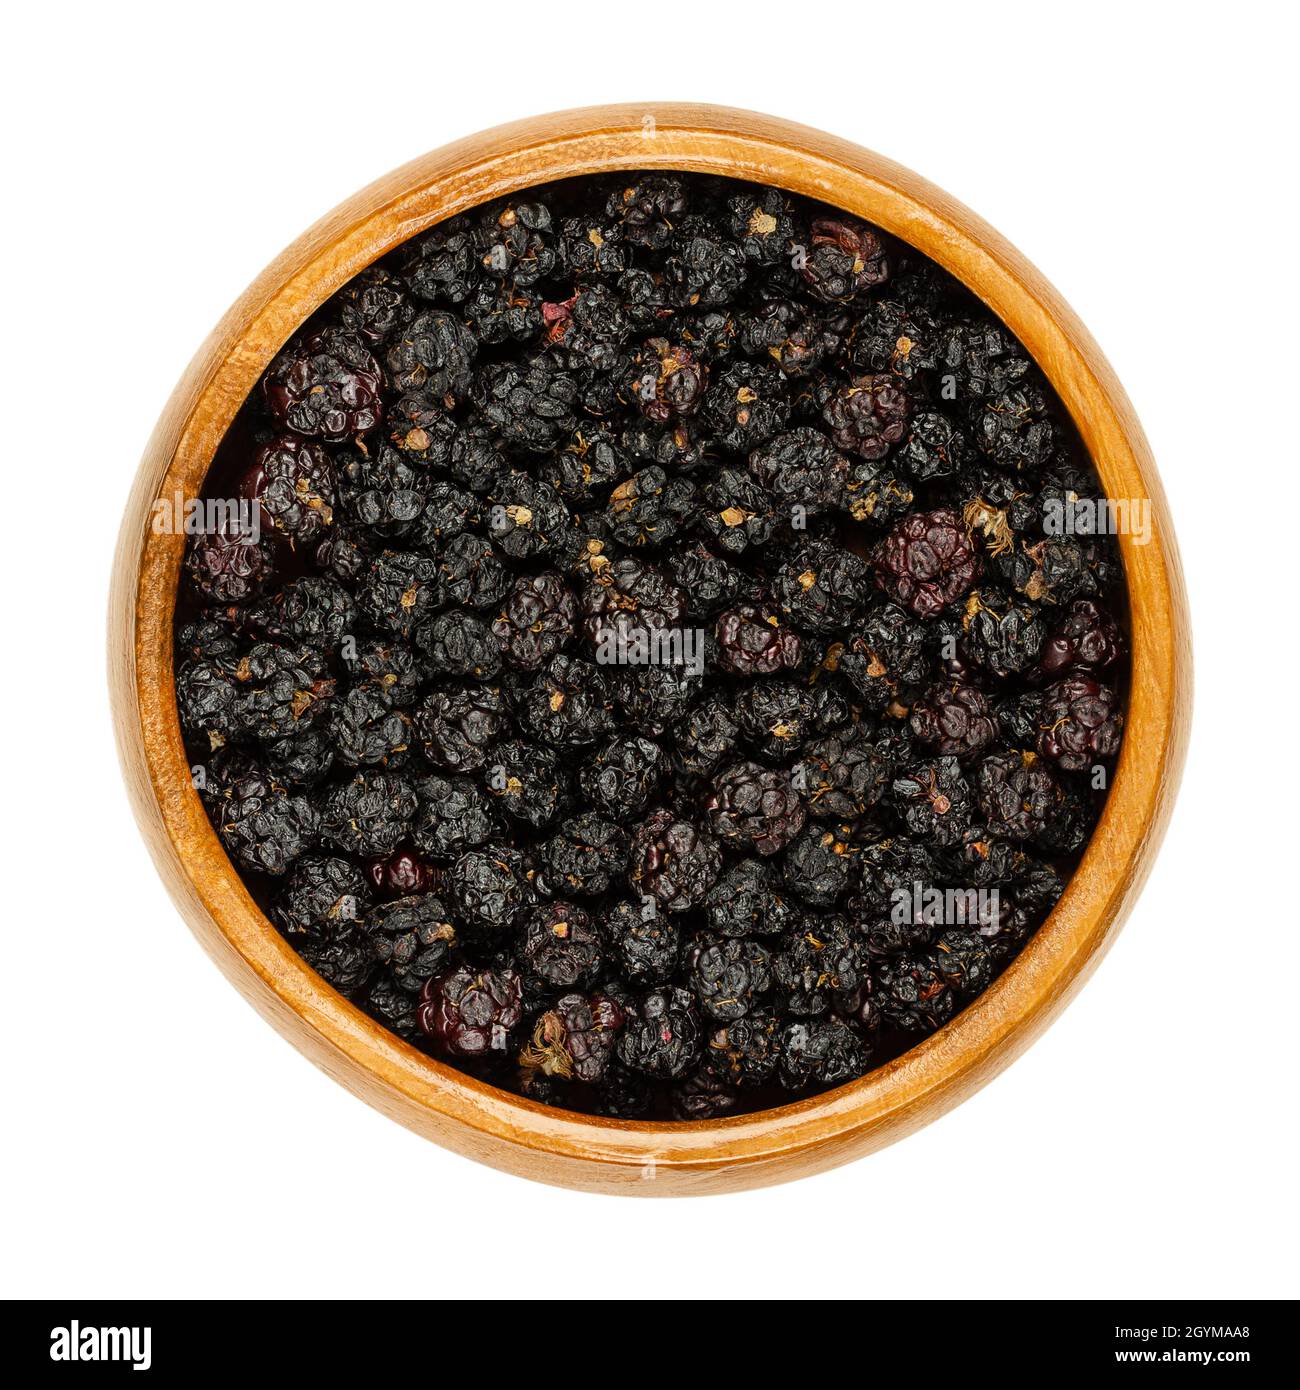 Bacche nere europee secche mature in una ciotola di legno. Brambles selvaggi essiccati all'aria, Rubus fruticosus, un frutto dolce, usato per l'additivo del tè. Foto Stock